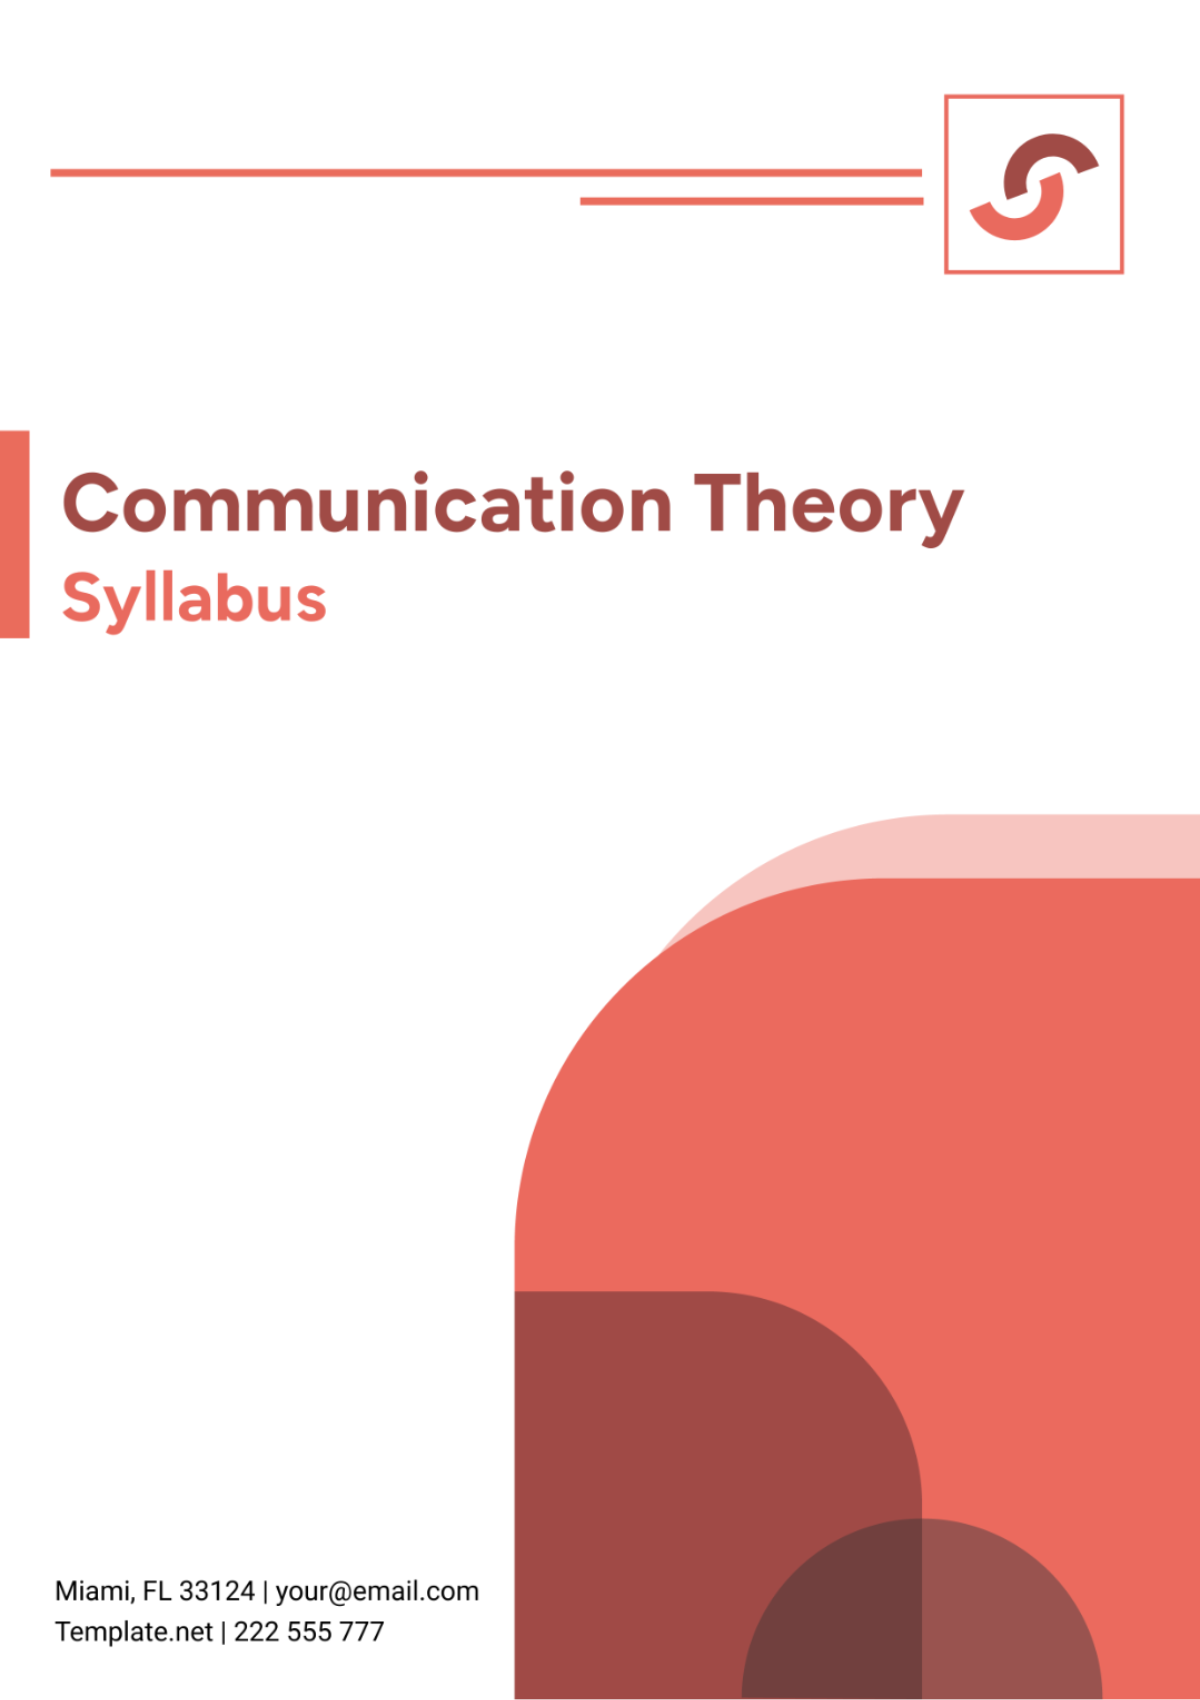 Communication Theory Syllabus Template